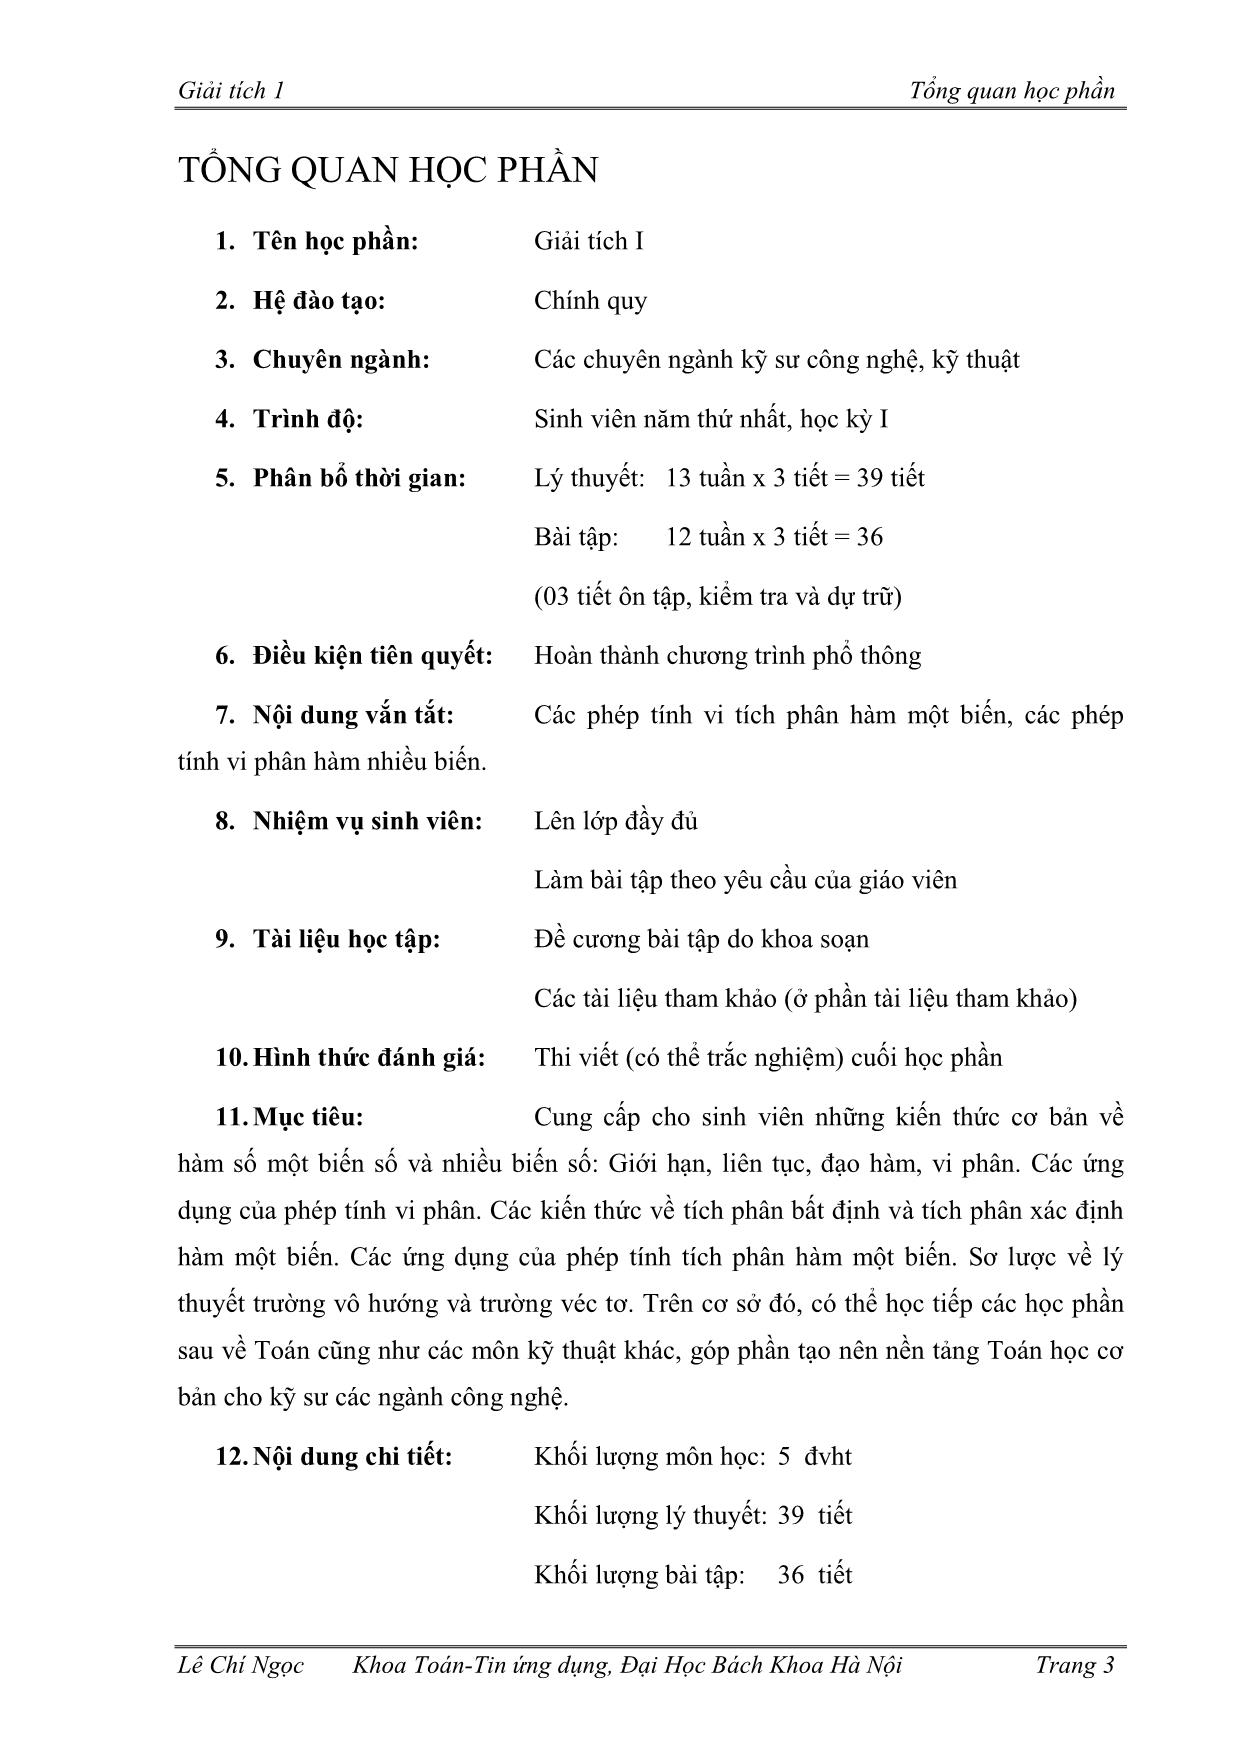 Giáo trình Giải tích 1 trang 4